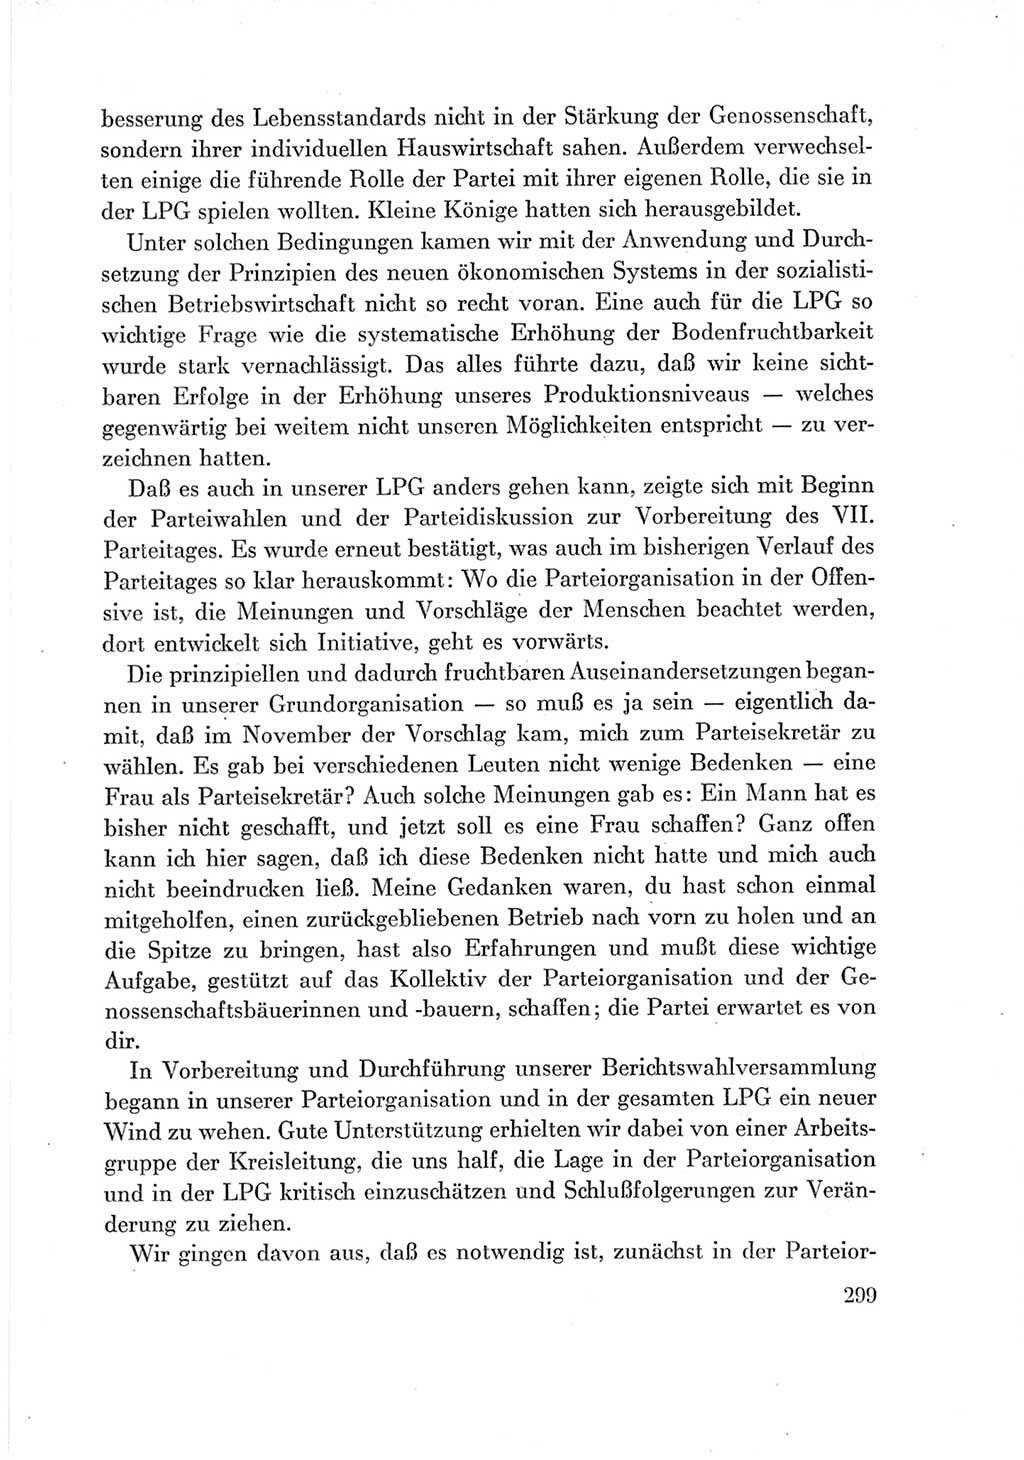 Protokoll der Verhandlungen des Ⅶ. Parteitages der Sozialistischen Einheitspartei Deutschlands (SED) [Deutsche Demokratische Republik (DDR)] 1967, Band Ⅲ, Seite 299 (Prot. Verh. Ⅶ. PT SED DDR 1967, Bd. Ⅲ, S. 299)